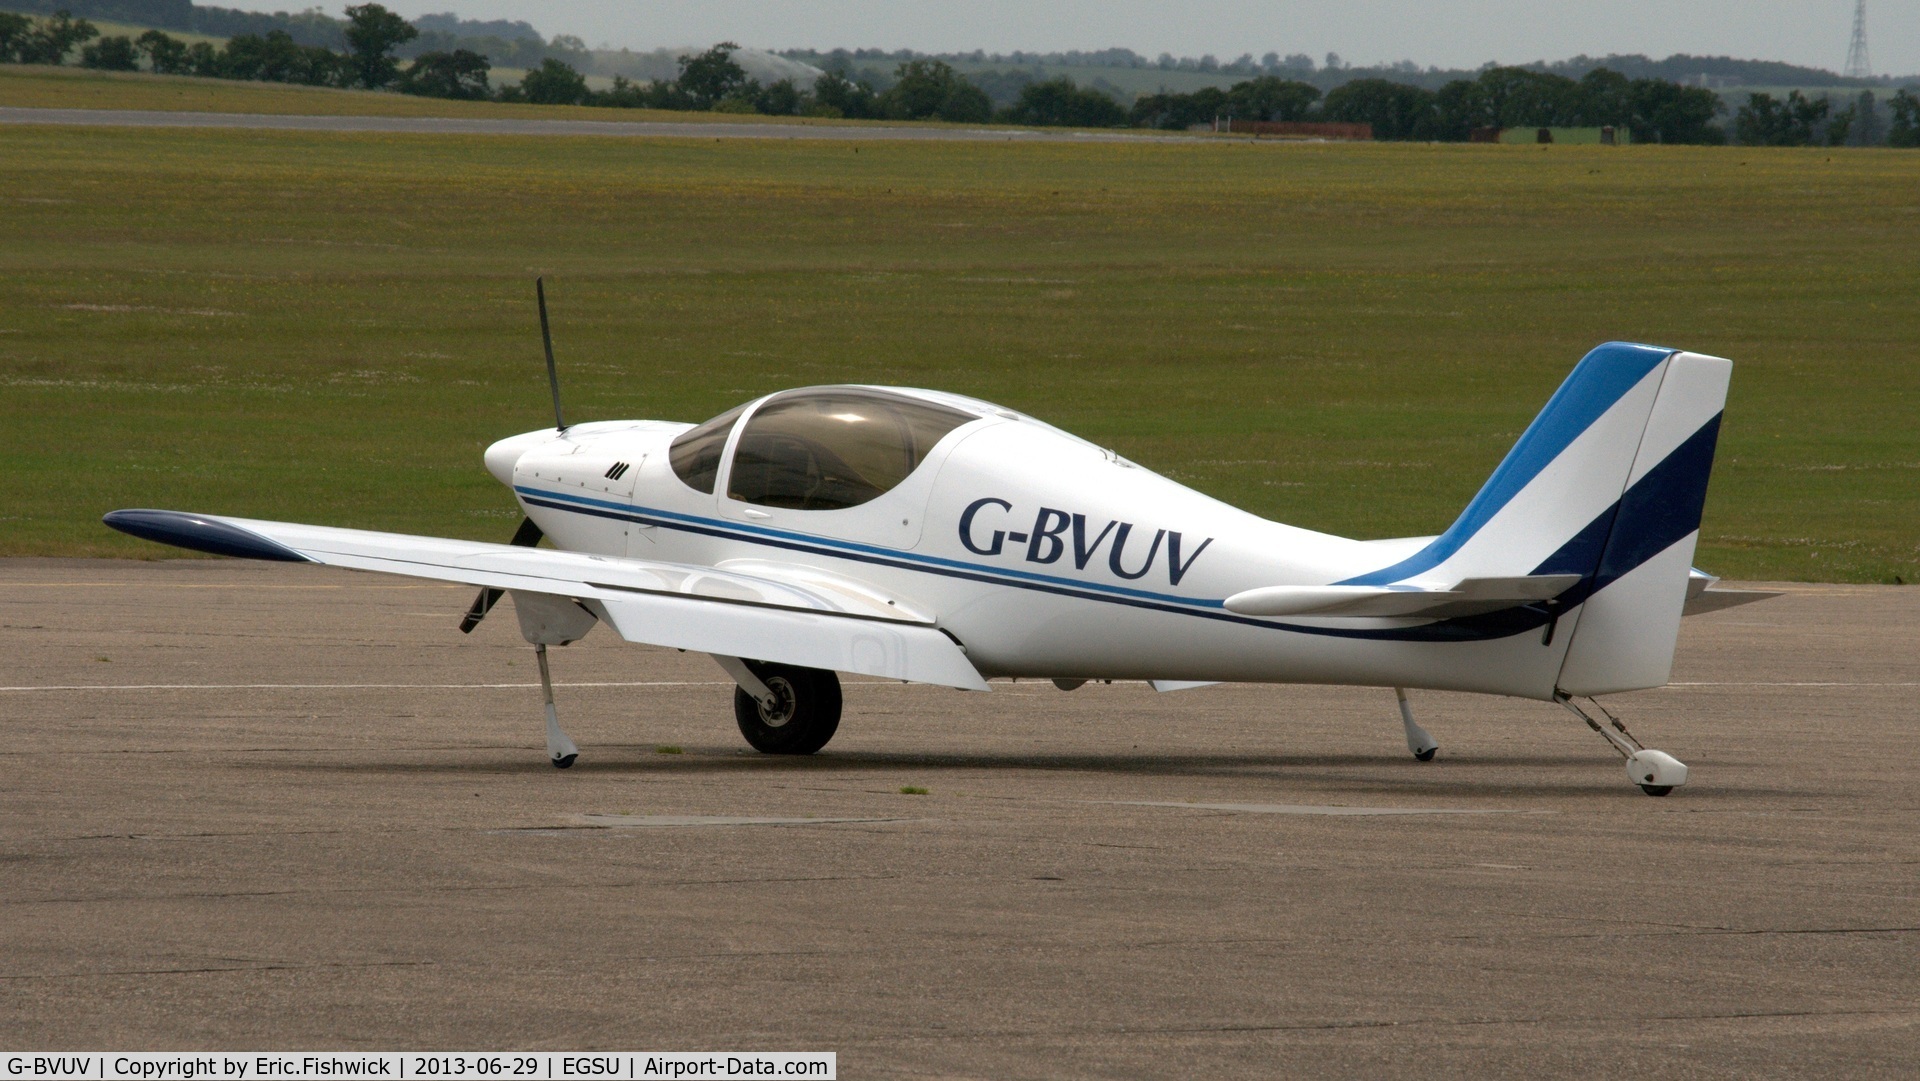 G-BVUV, 1999 Europa Monowheel C/N PFA 247-12762, 1. G-BVUV at Duxford Airfield.